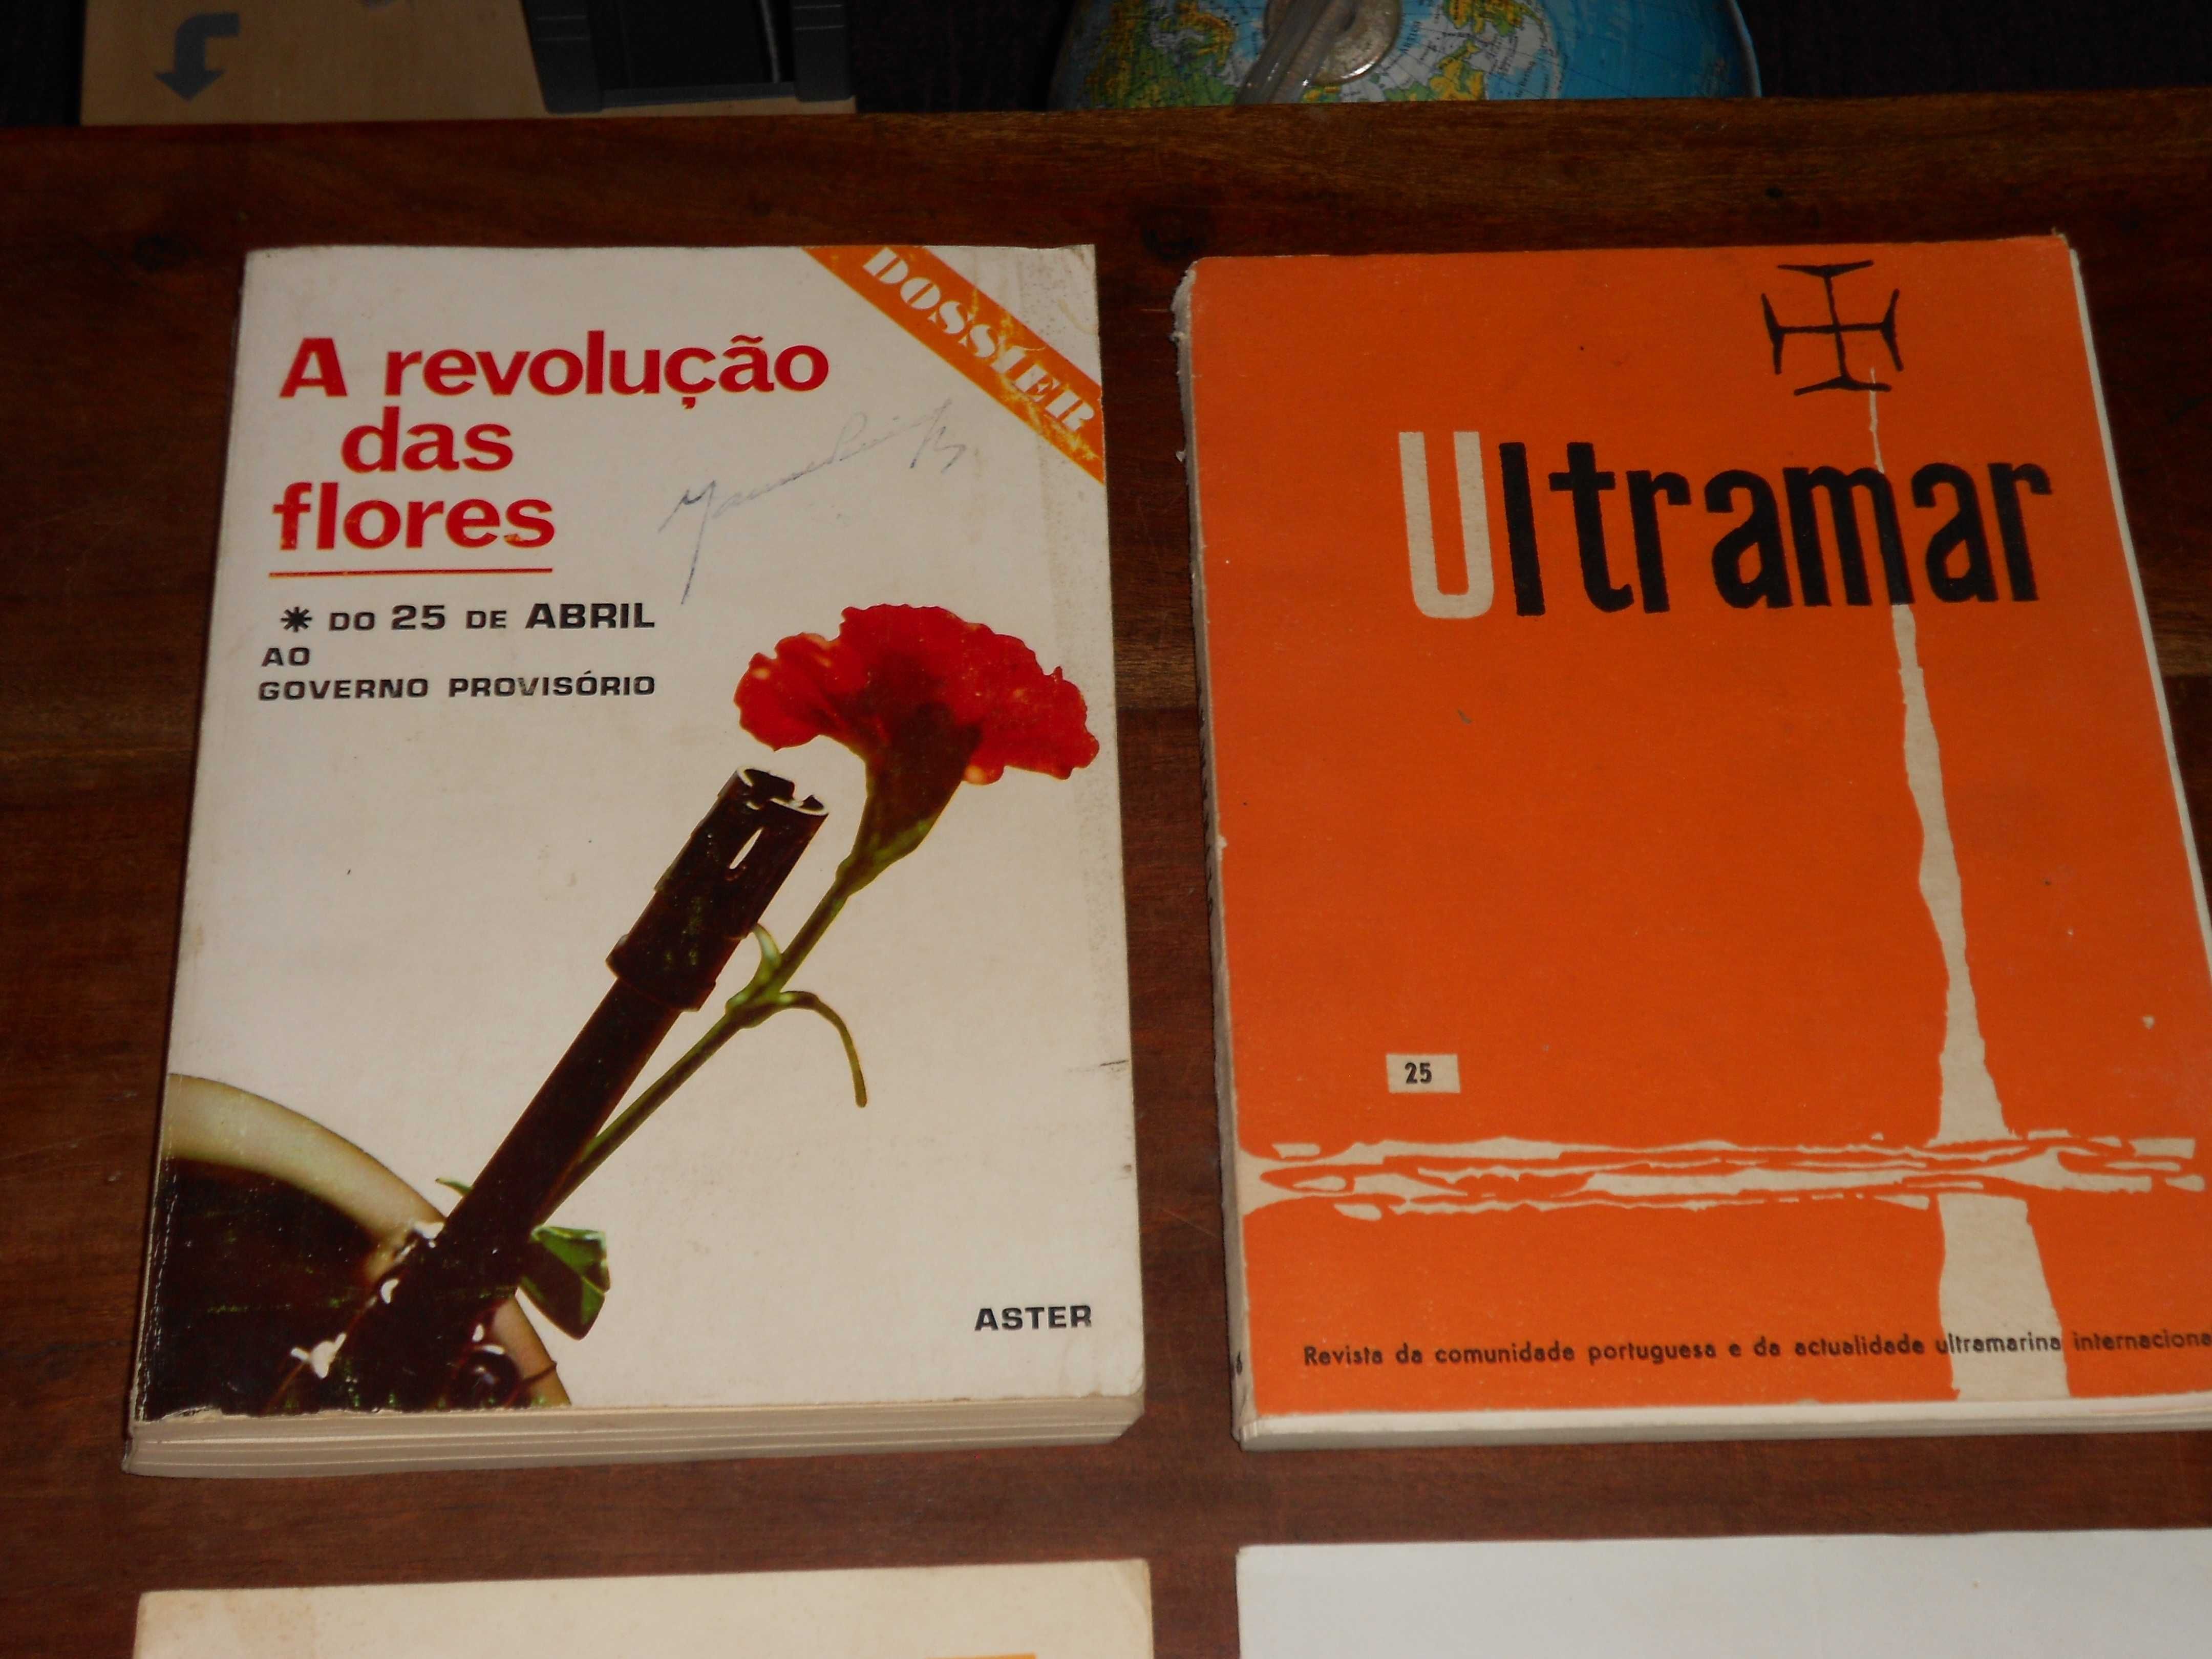 Livros Ultramar, Dossier Revolucao Flores, publicacao clandestina, Goa